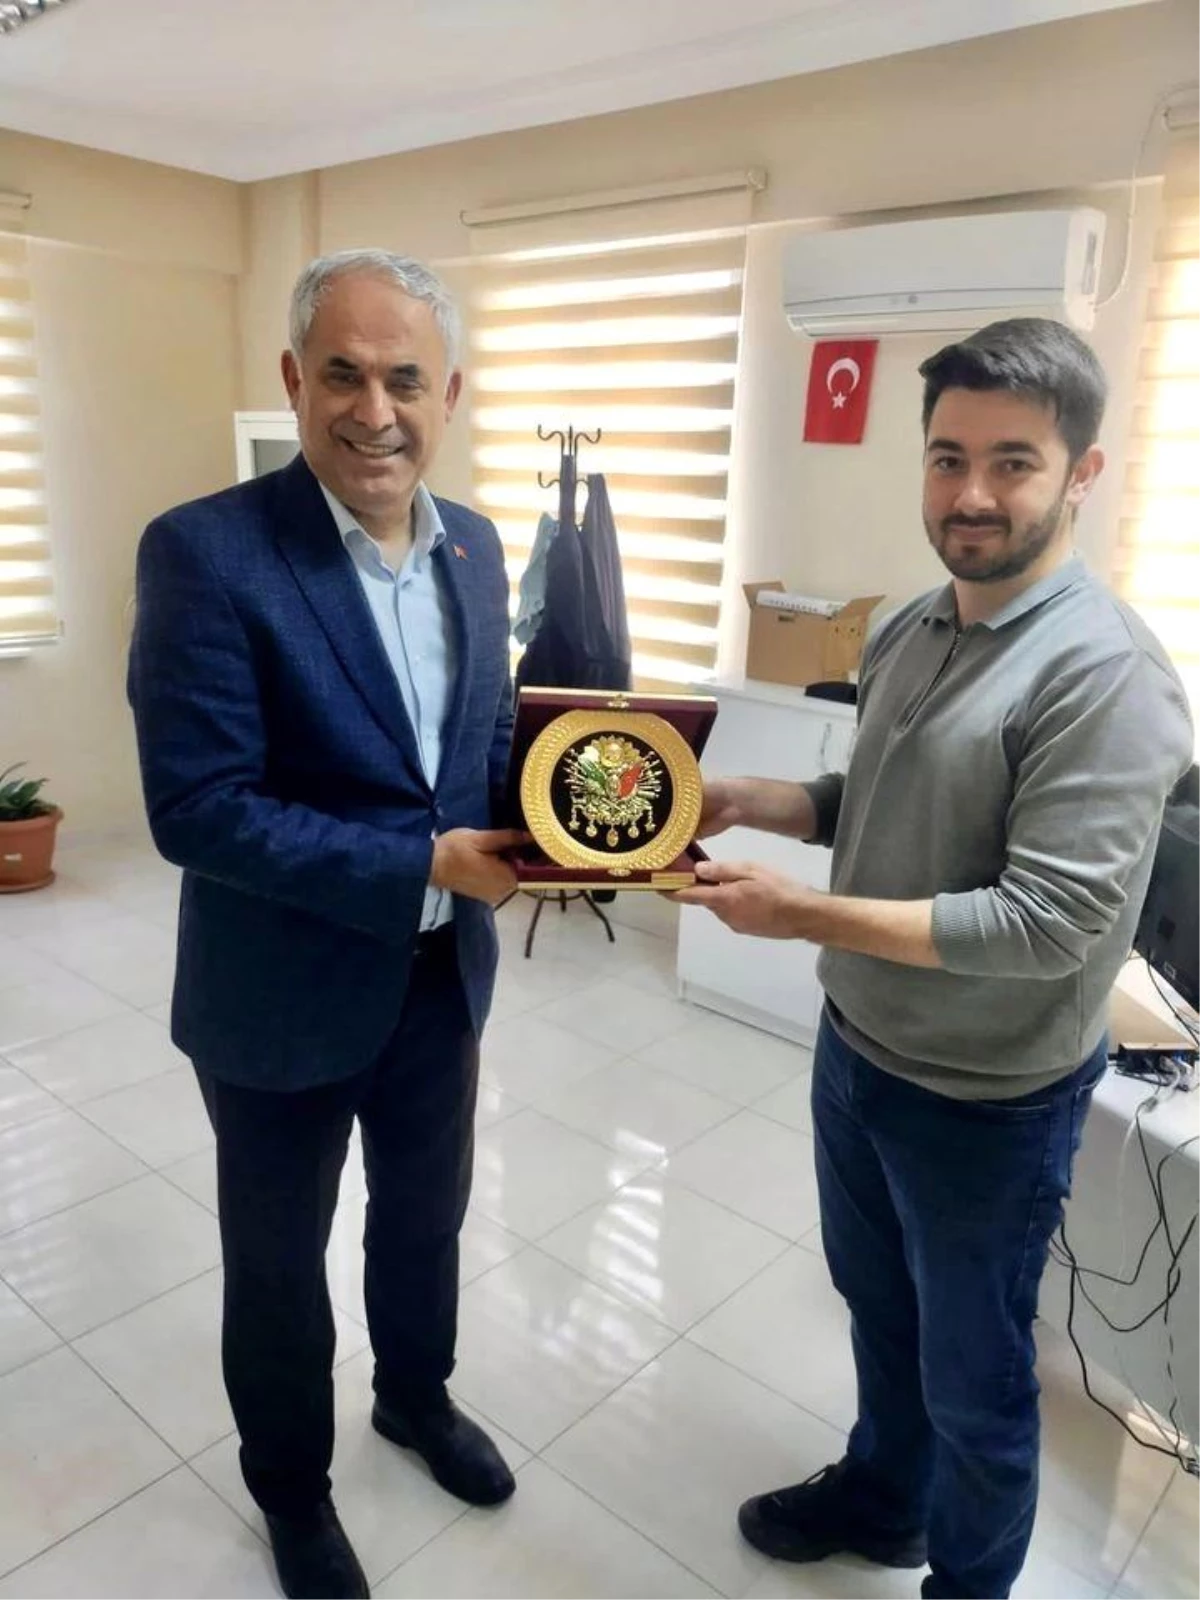 Bilecik\'in Bayırköy Belde Belediye Başkanı Mustafa Yaman, Aile Hekimine Plaket Takdim Etti